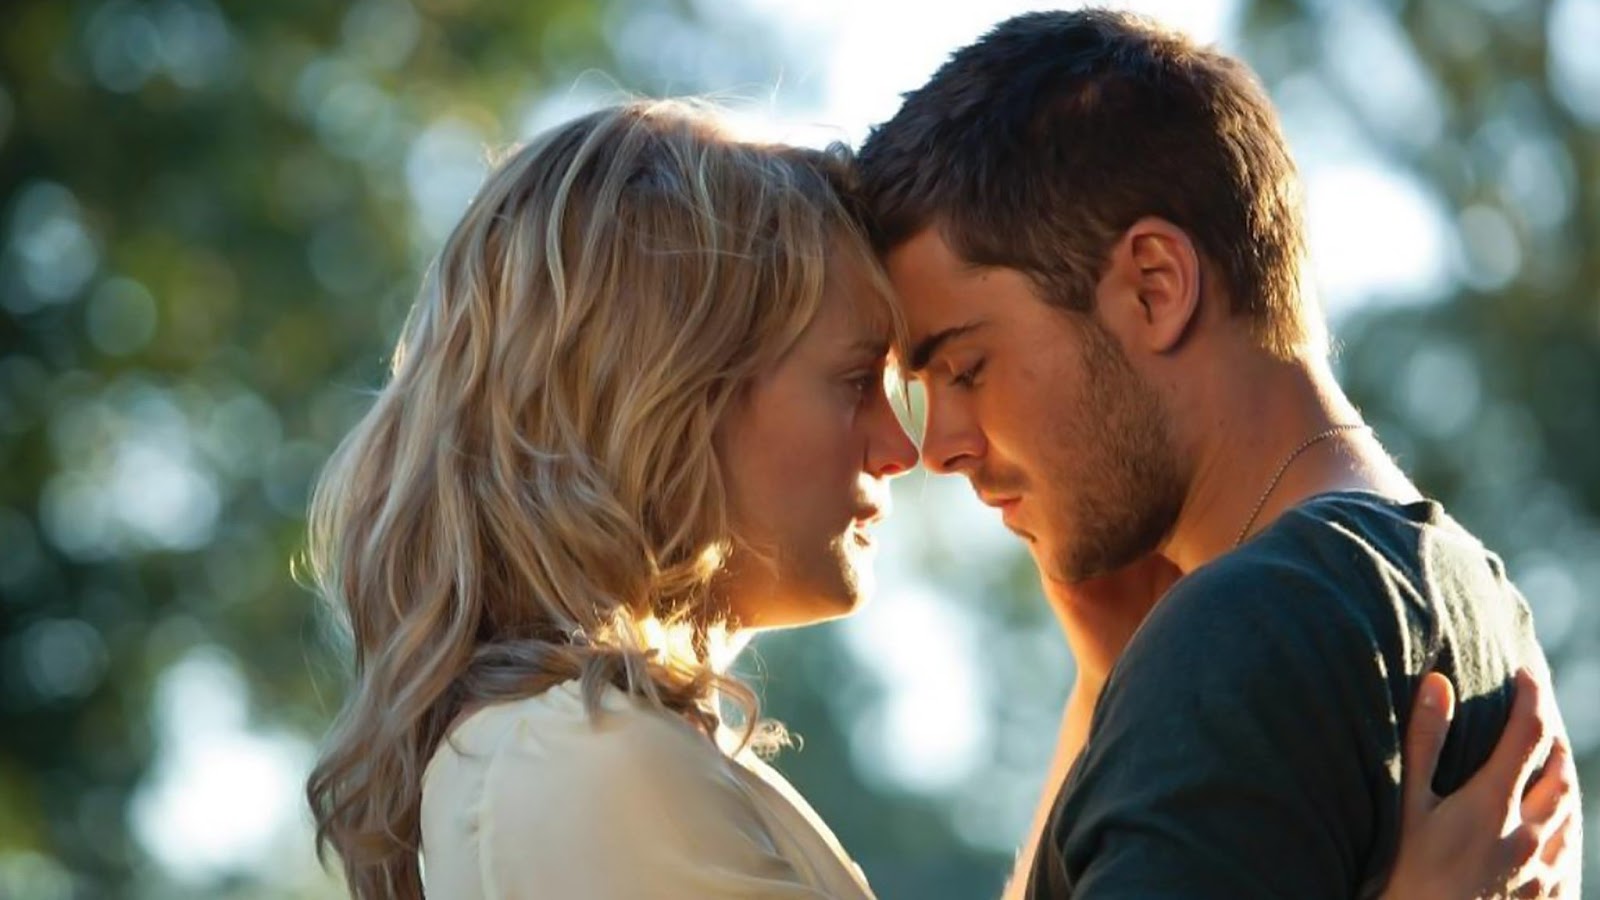 Beth y Logan a punto de besarse en la película Cuando te encuentre